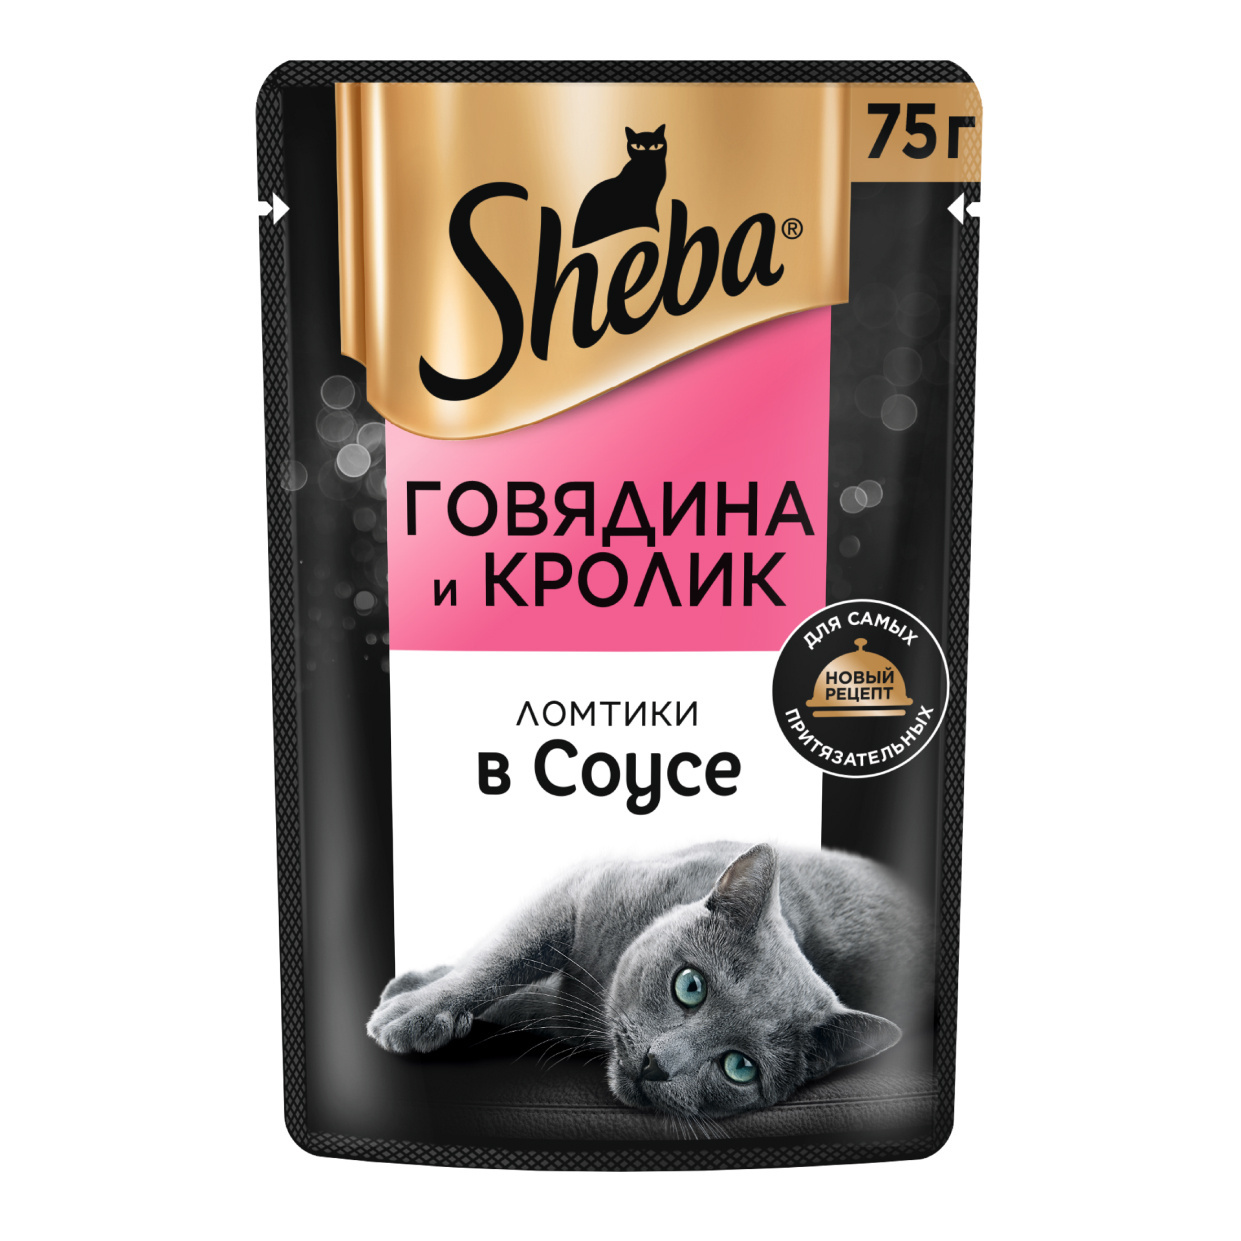 Sheba влажный корм для кошек «Ломтики в соусе с говядиной и кроликом» (75 г)